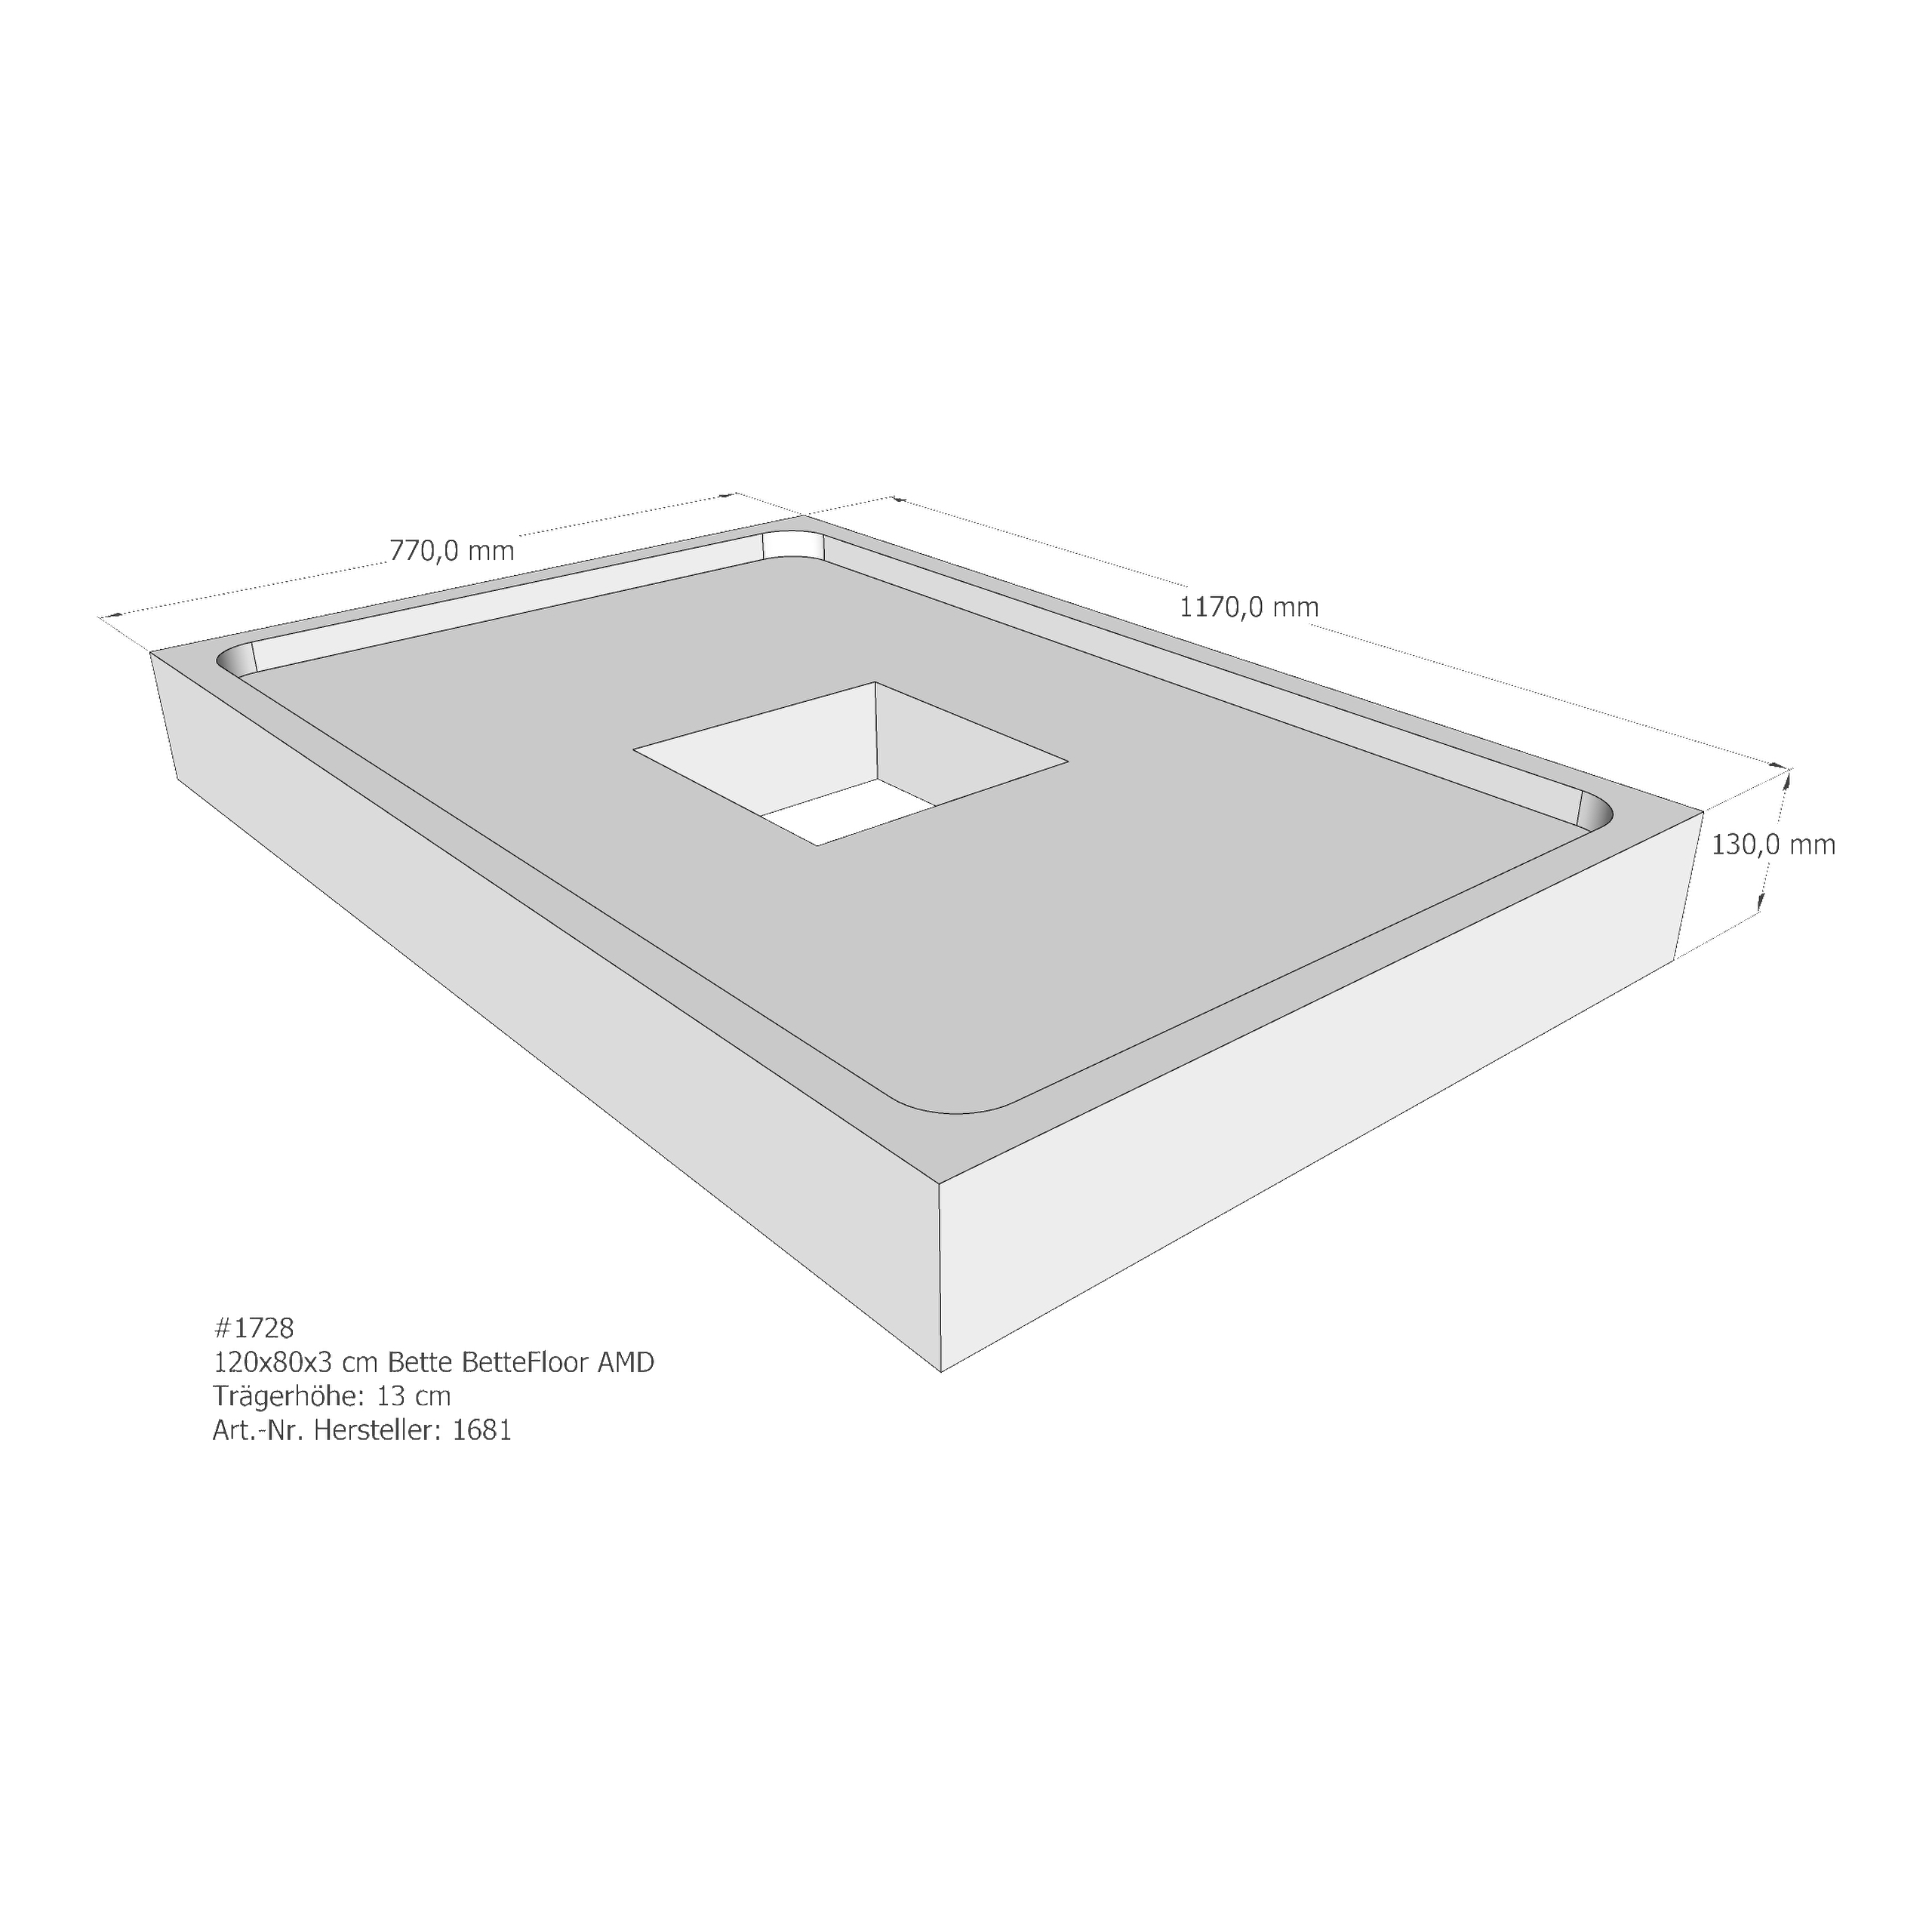 Duschwannenträger Bette BetteFloor 120x80x3 cm AMD